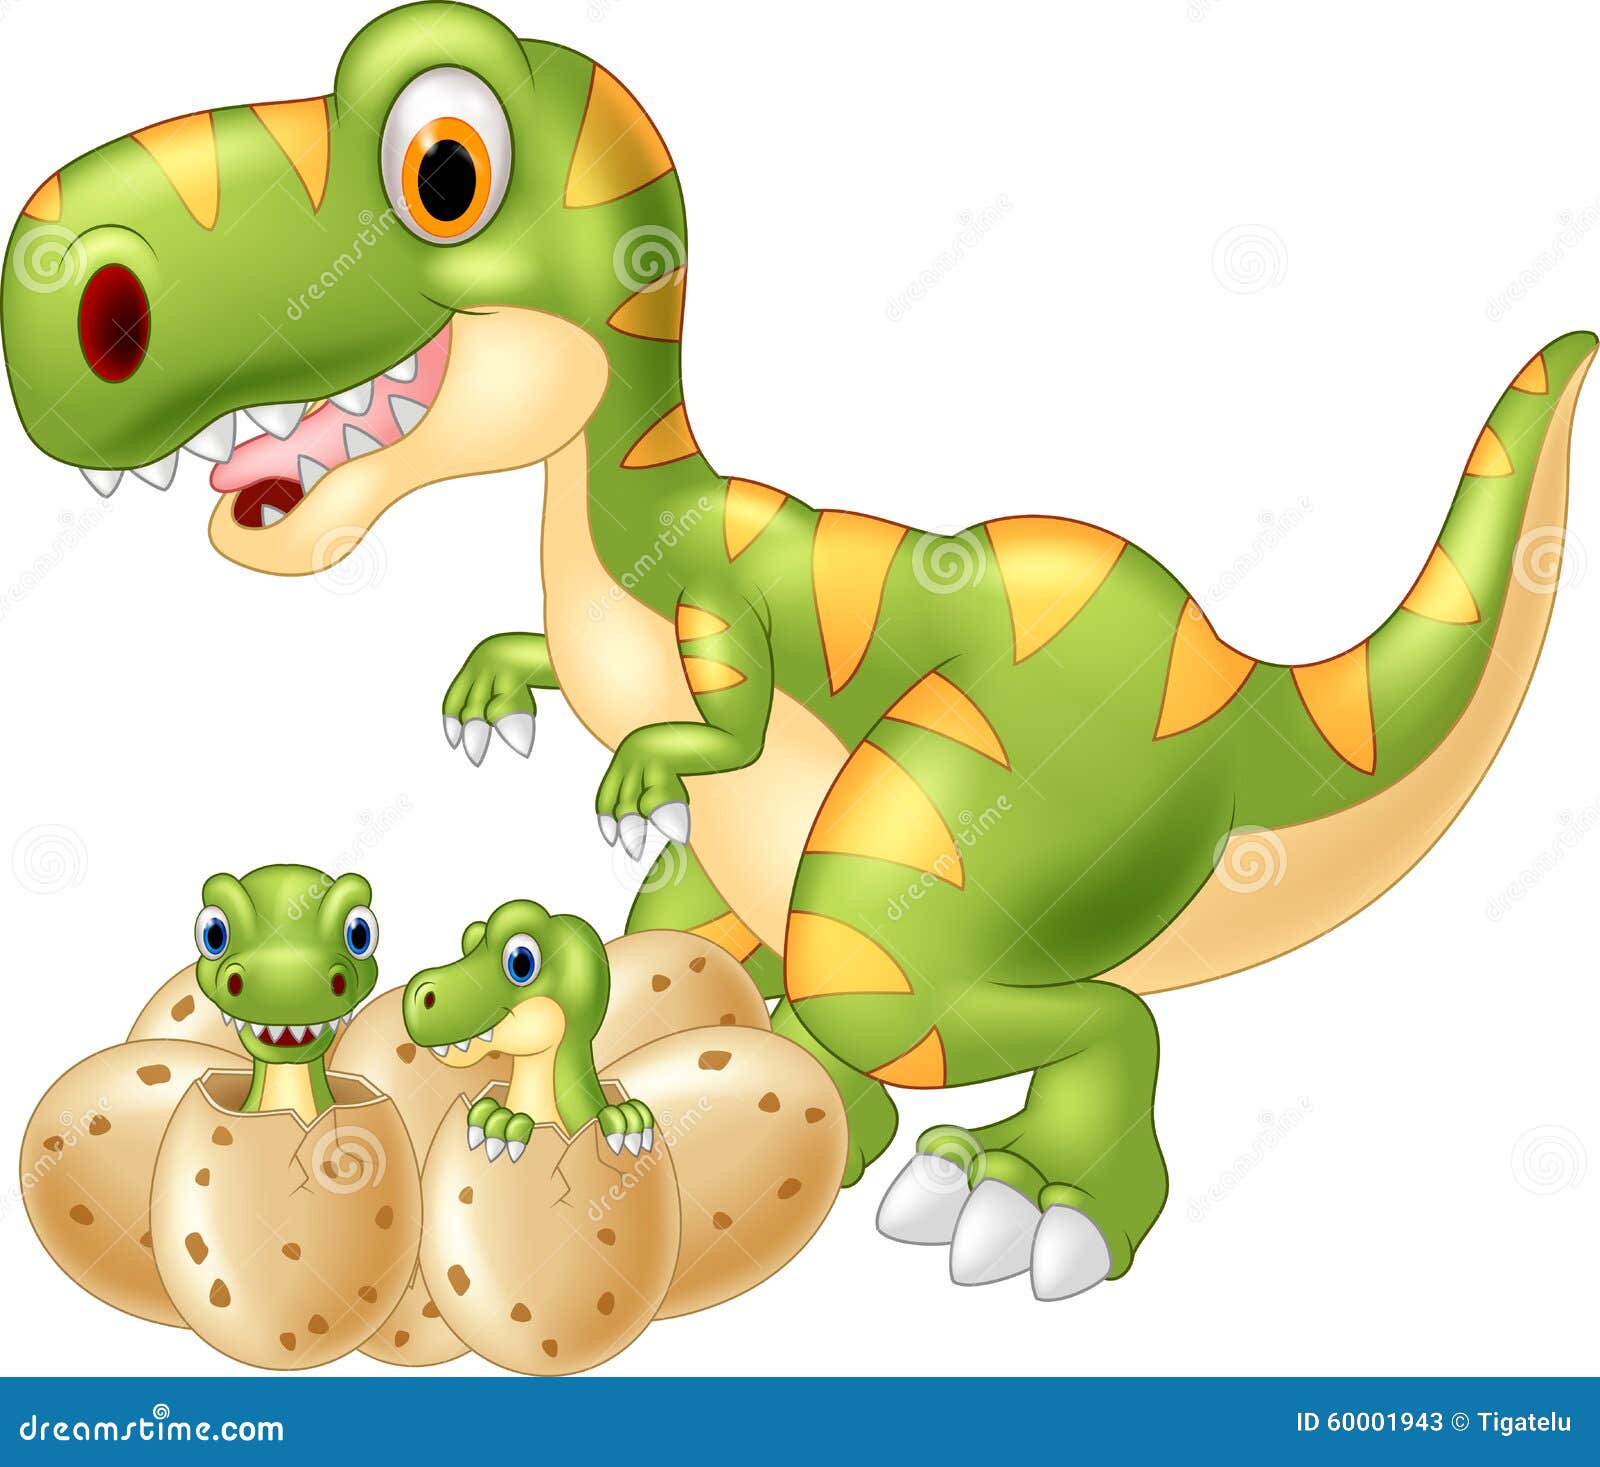 Beschrijvend studie Bereiken Mother Baby Dinosaur Hatching Stock Illustrations – 44 Mother Baby Dinosaur  Hatching Stock Illustrations, Vectors & Clipart - Dreamstime